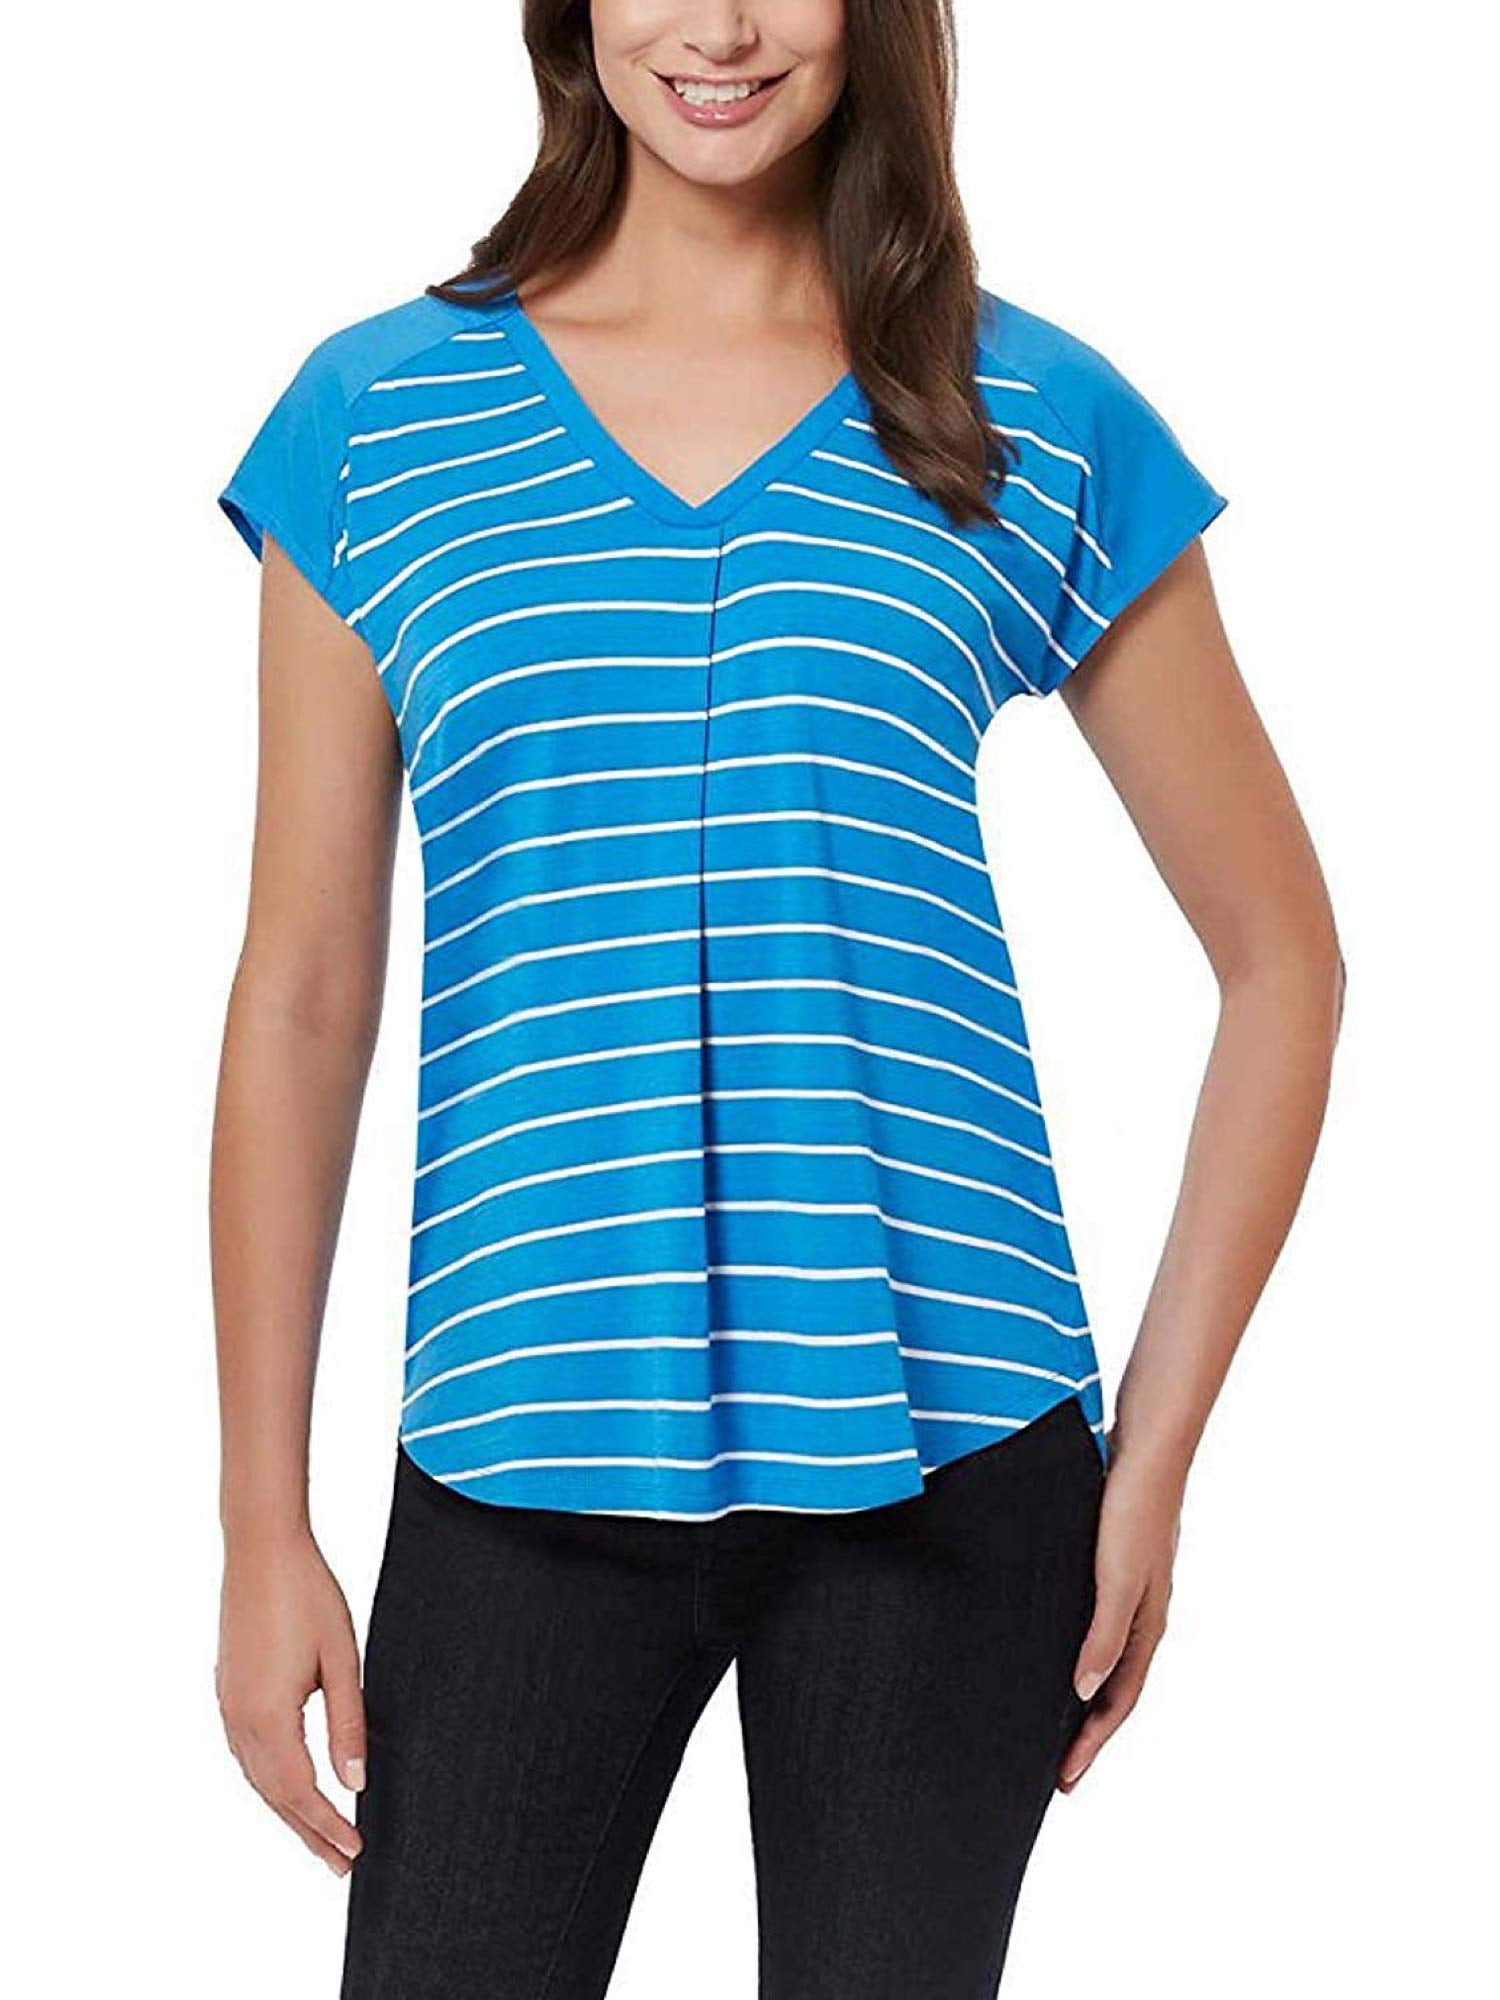 Adrienne Vittadini Ladies' Short Sleeve Top - Walmart.com